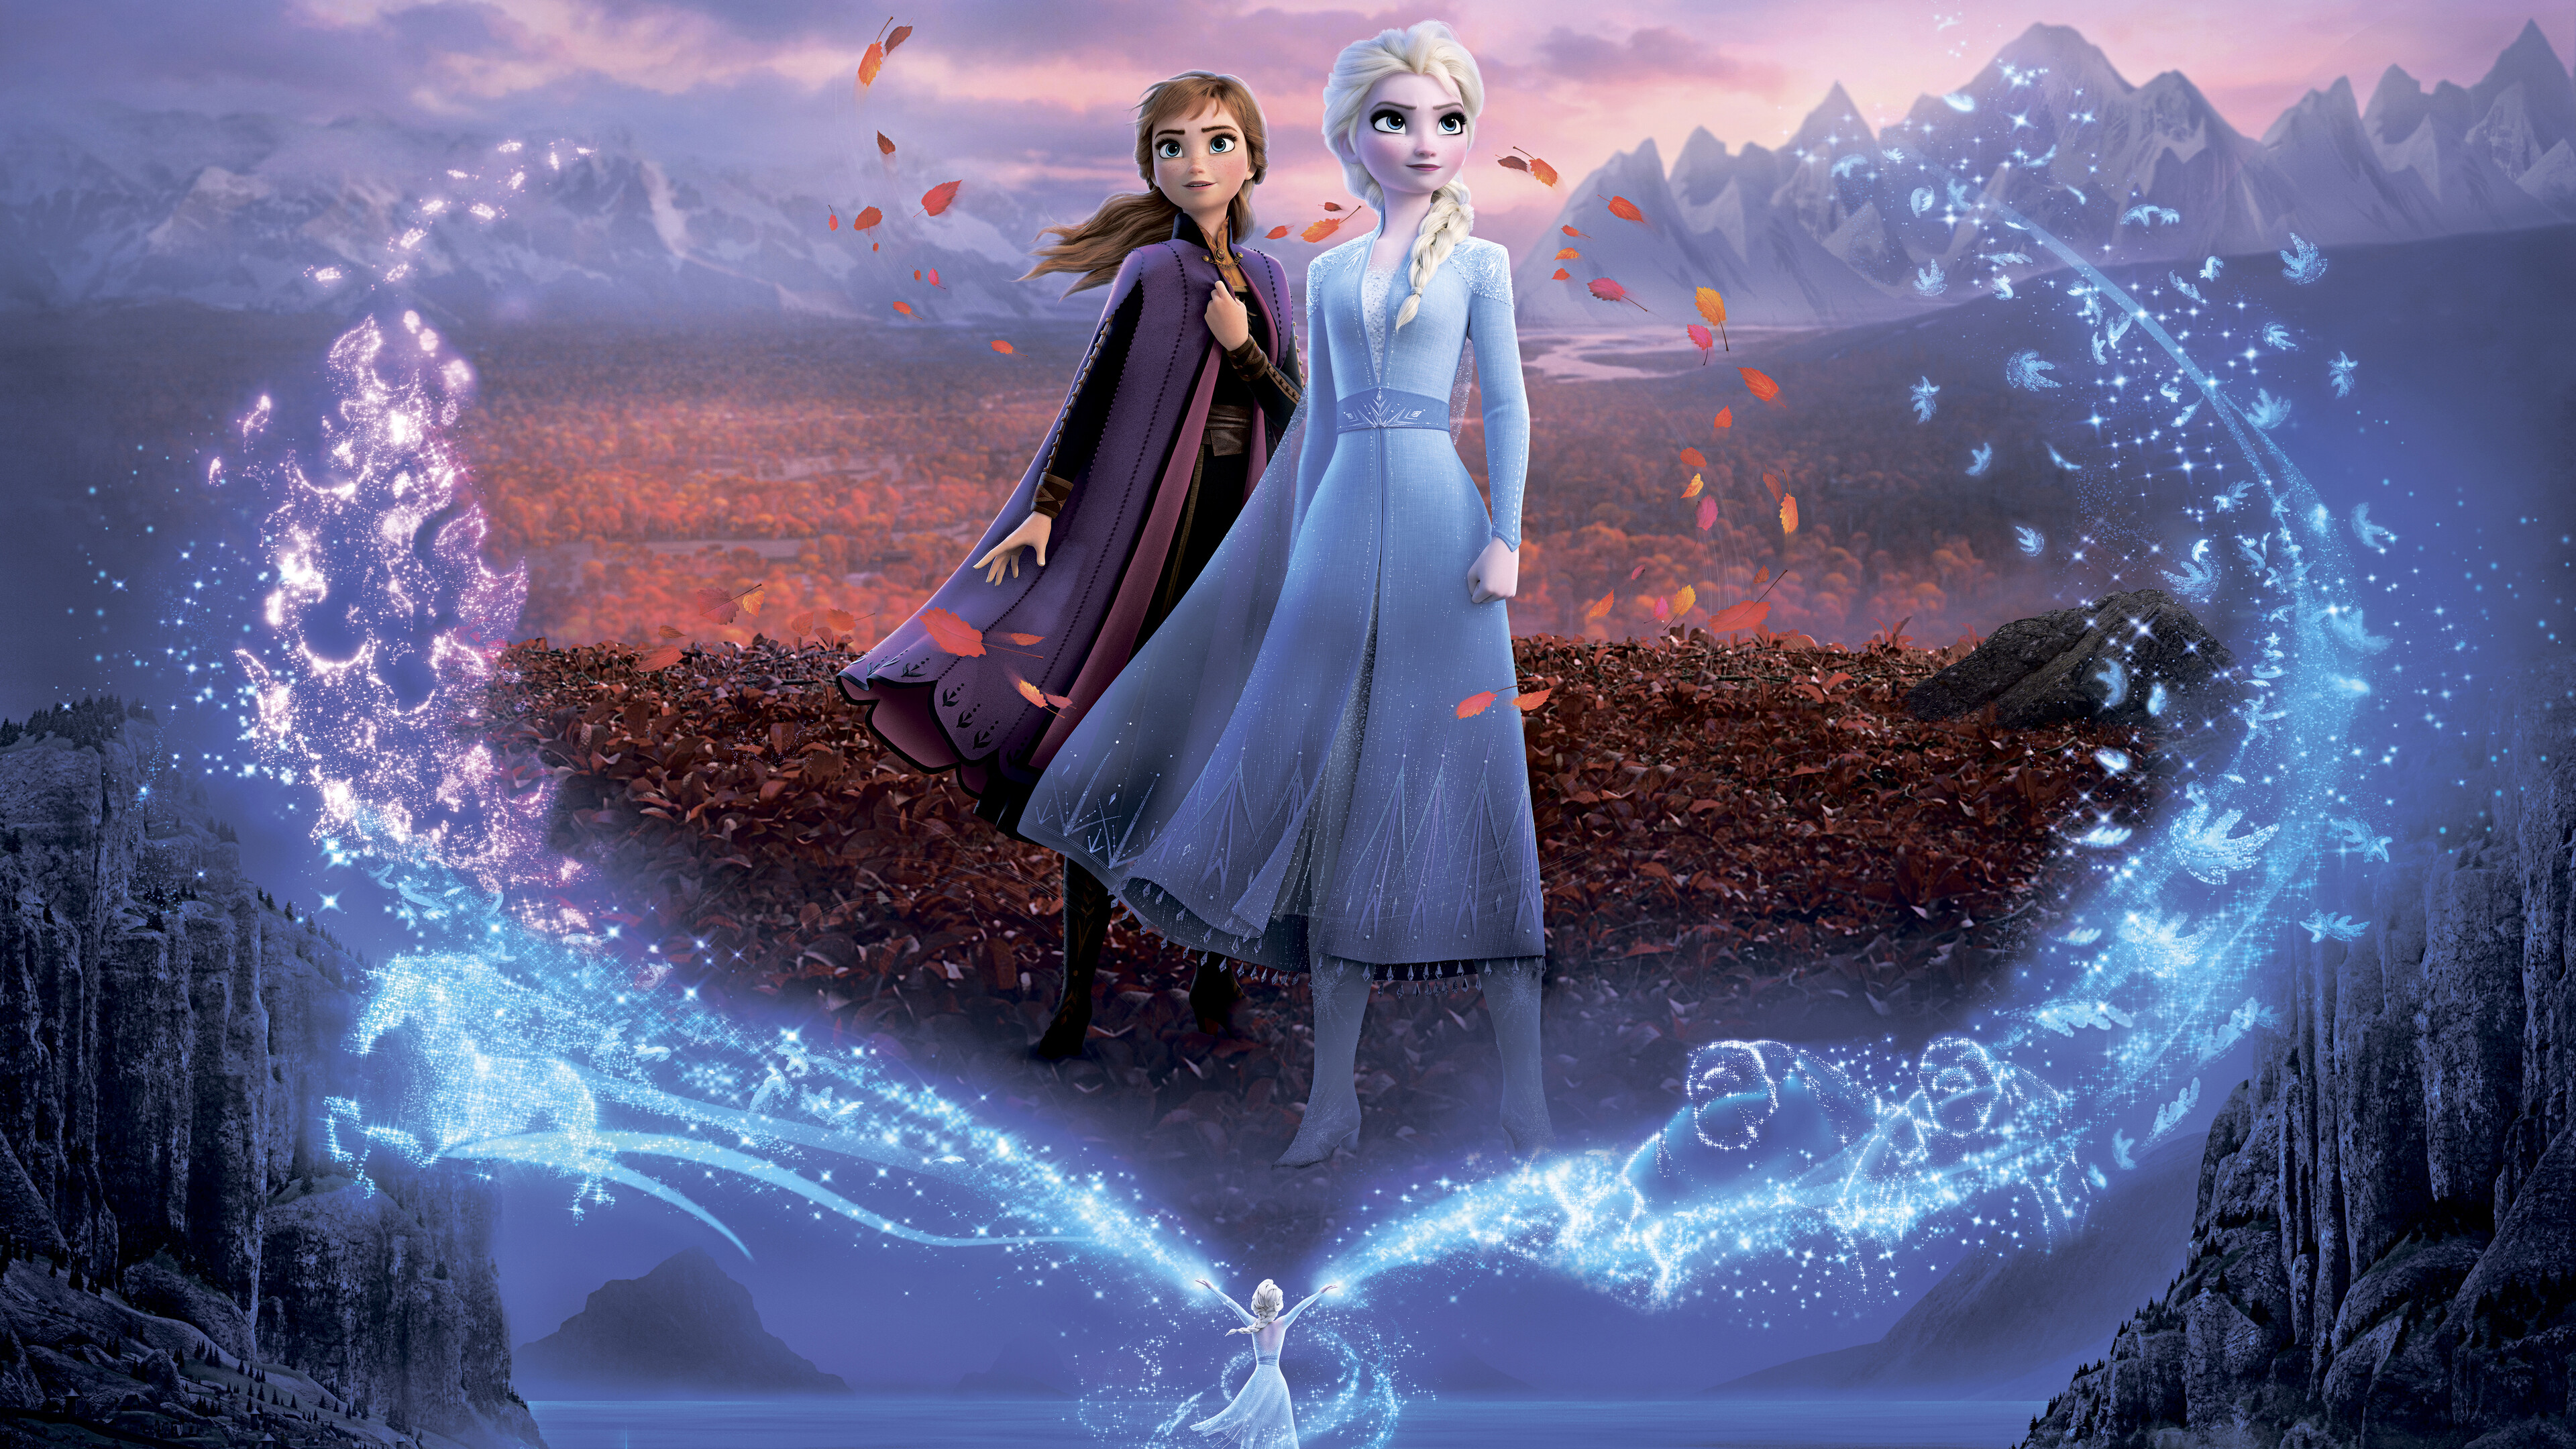 Frozen 2 Elsa and Anna Poster 8K Wallpaper 7438